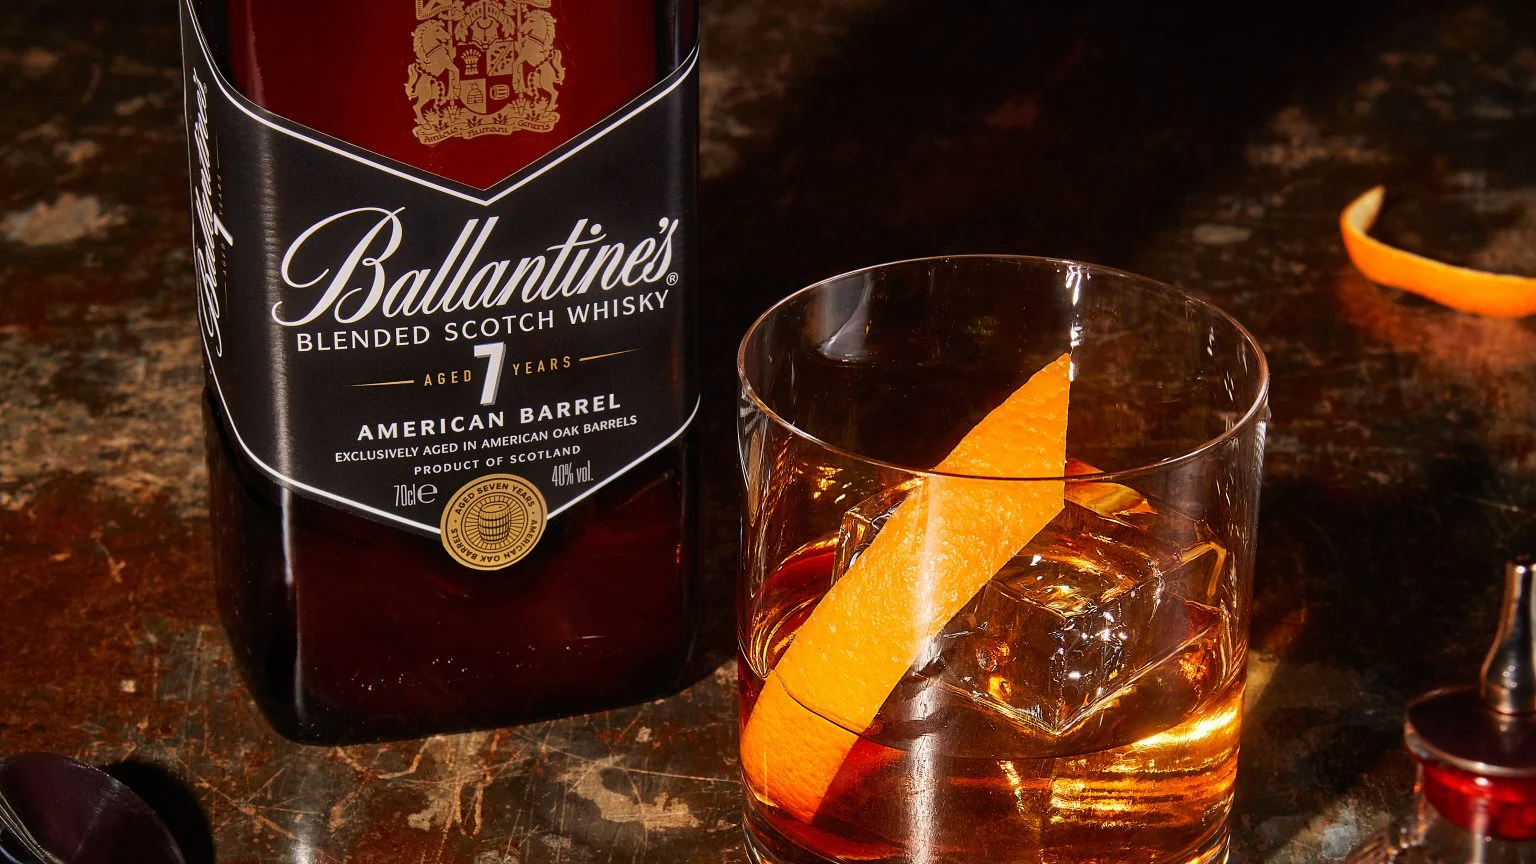 Ballantine’s Cinnamon Old Fashioned